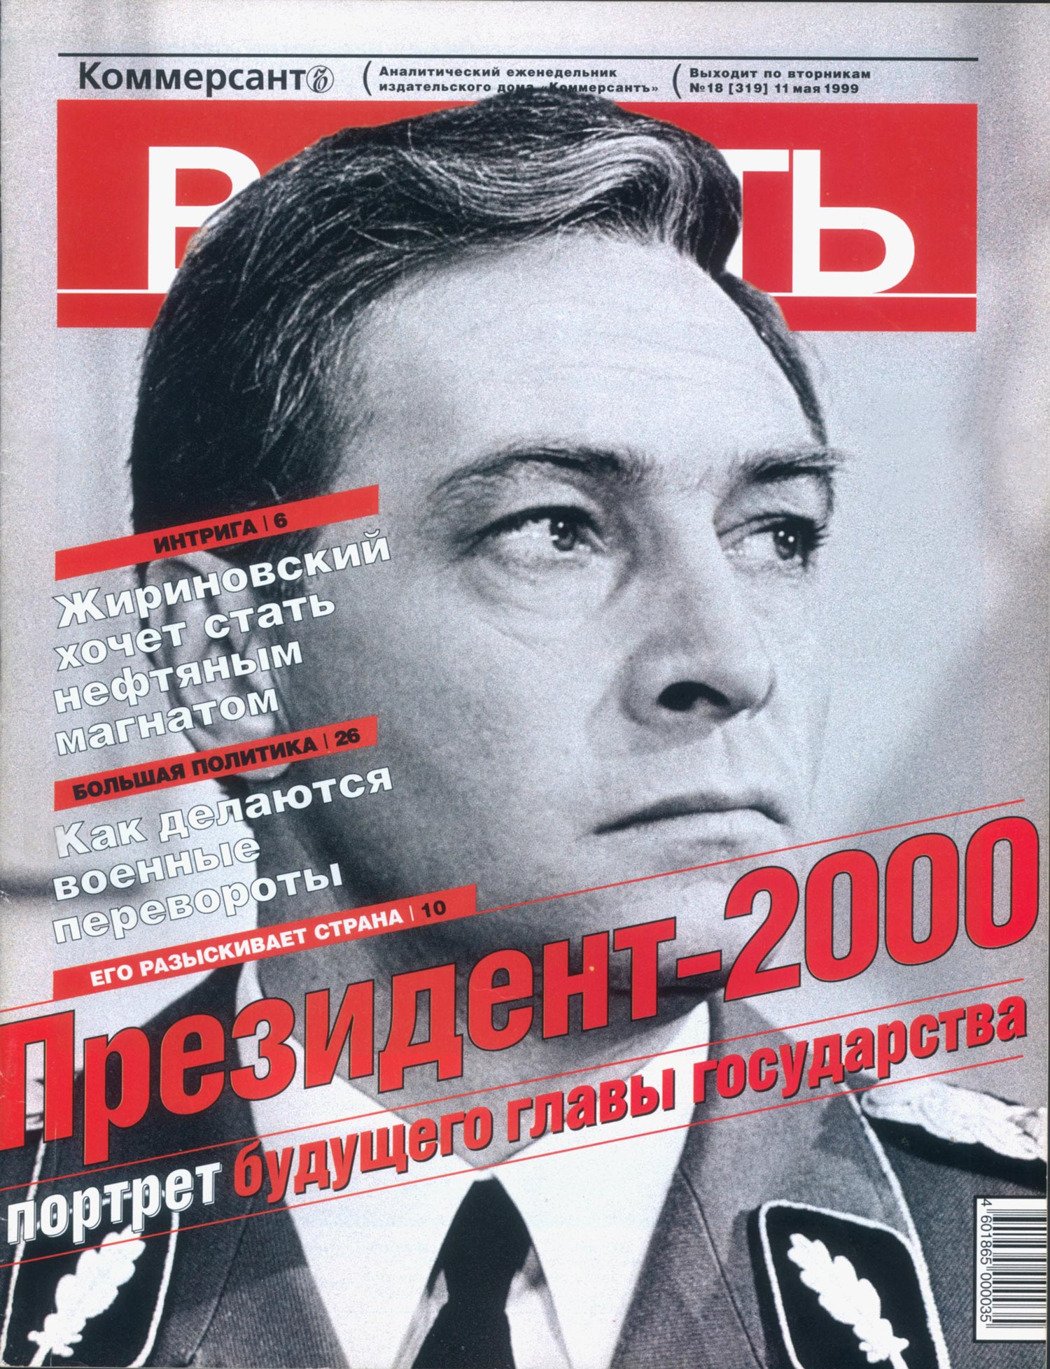 Обложка журнала Коммерсантъ-Власть № 18 от 11 мая 1999 года. Фото:  Коммерсантъ